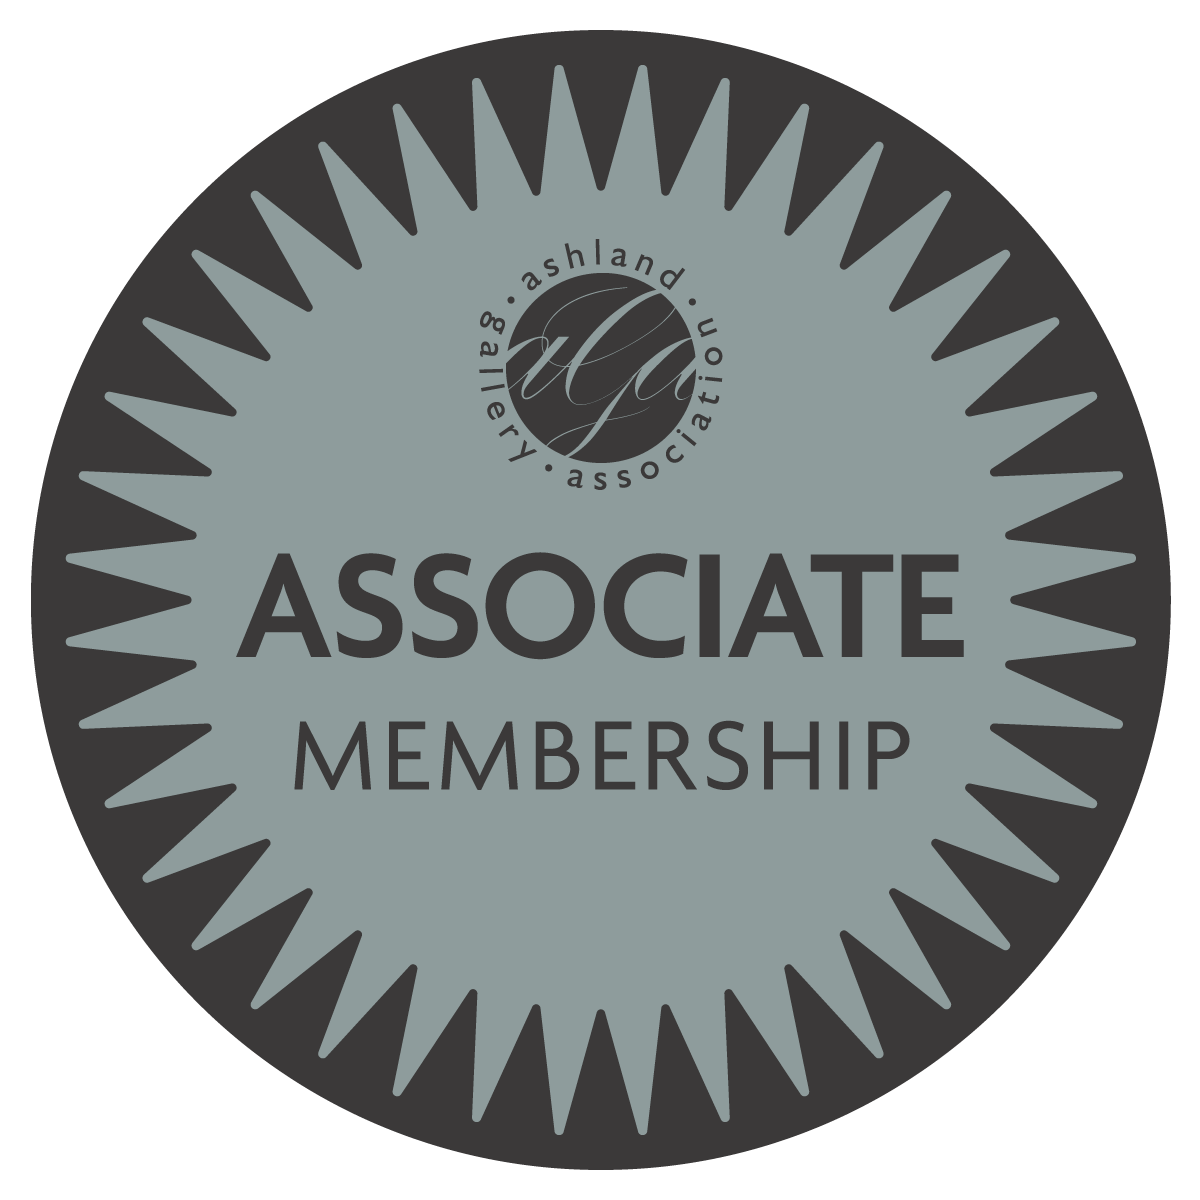 Associate Membership